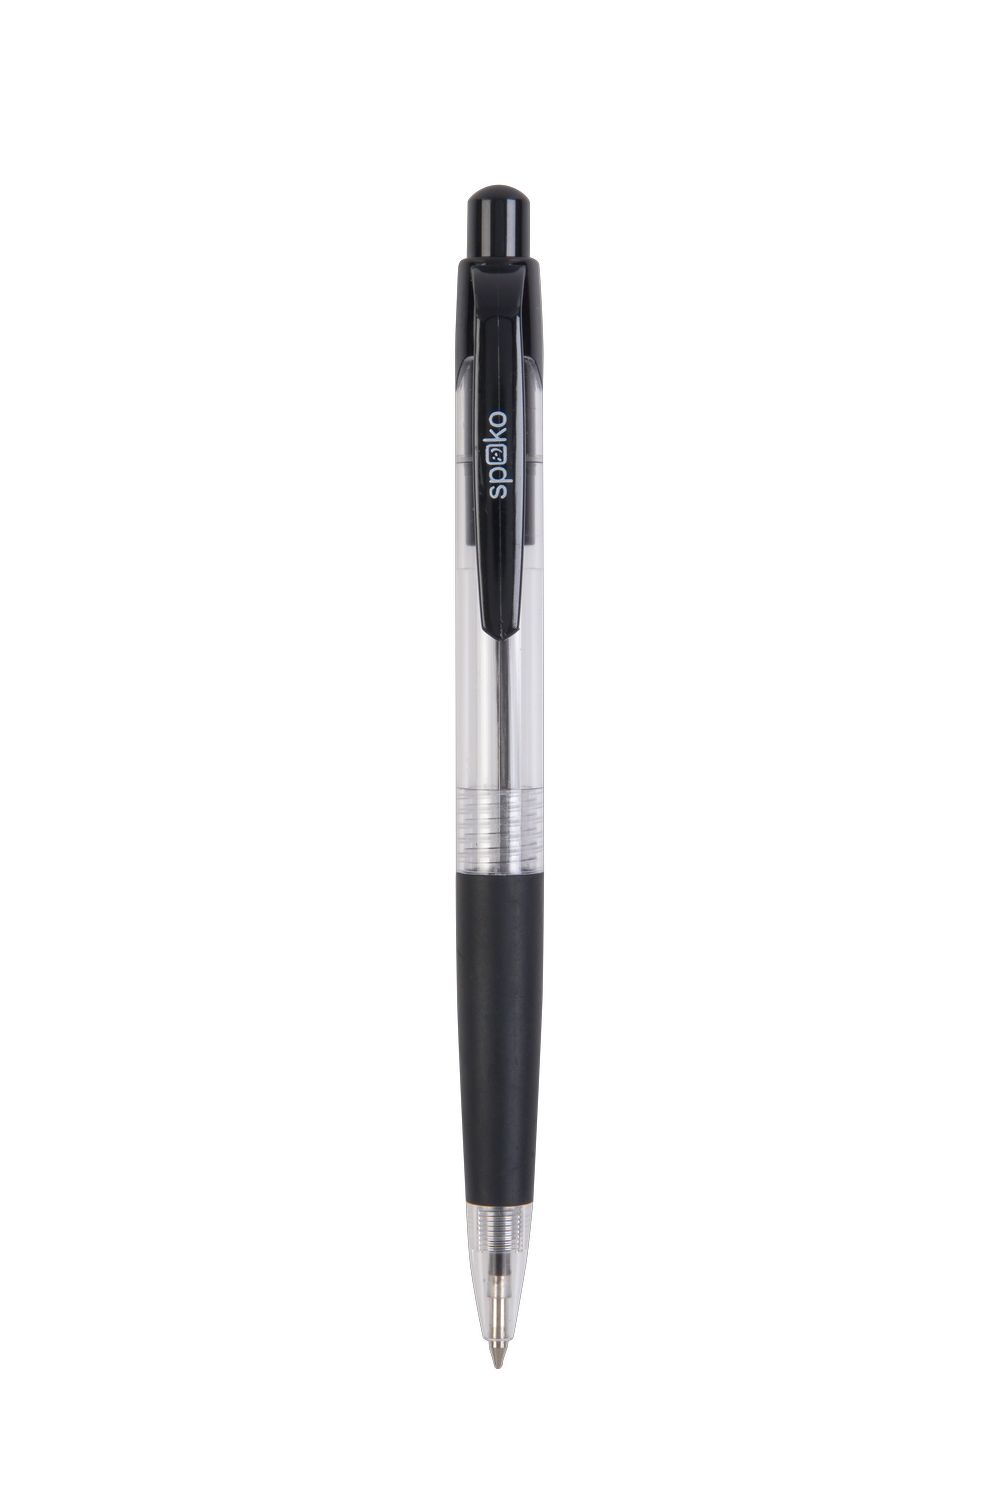 Pero kuličkové COLOMBO transparentní černé